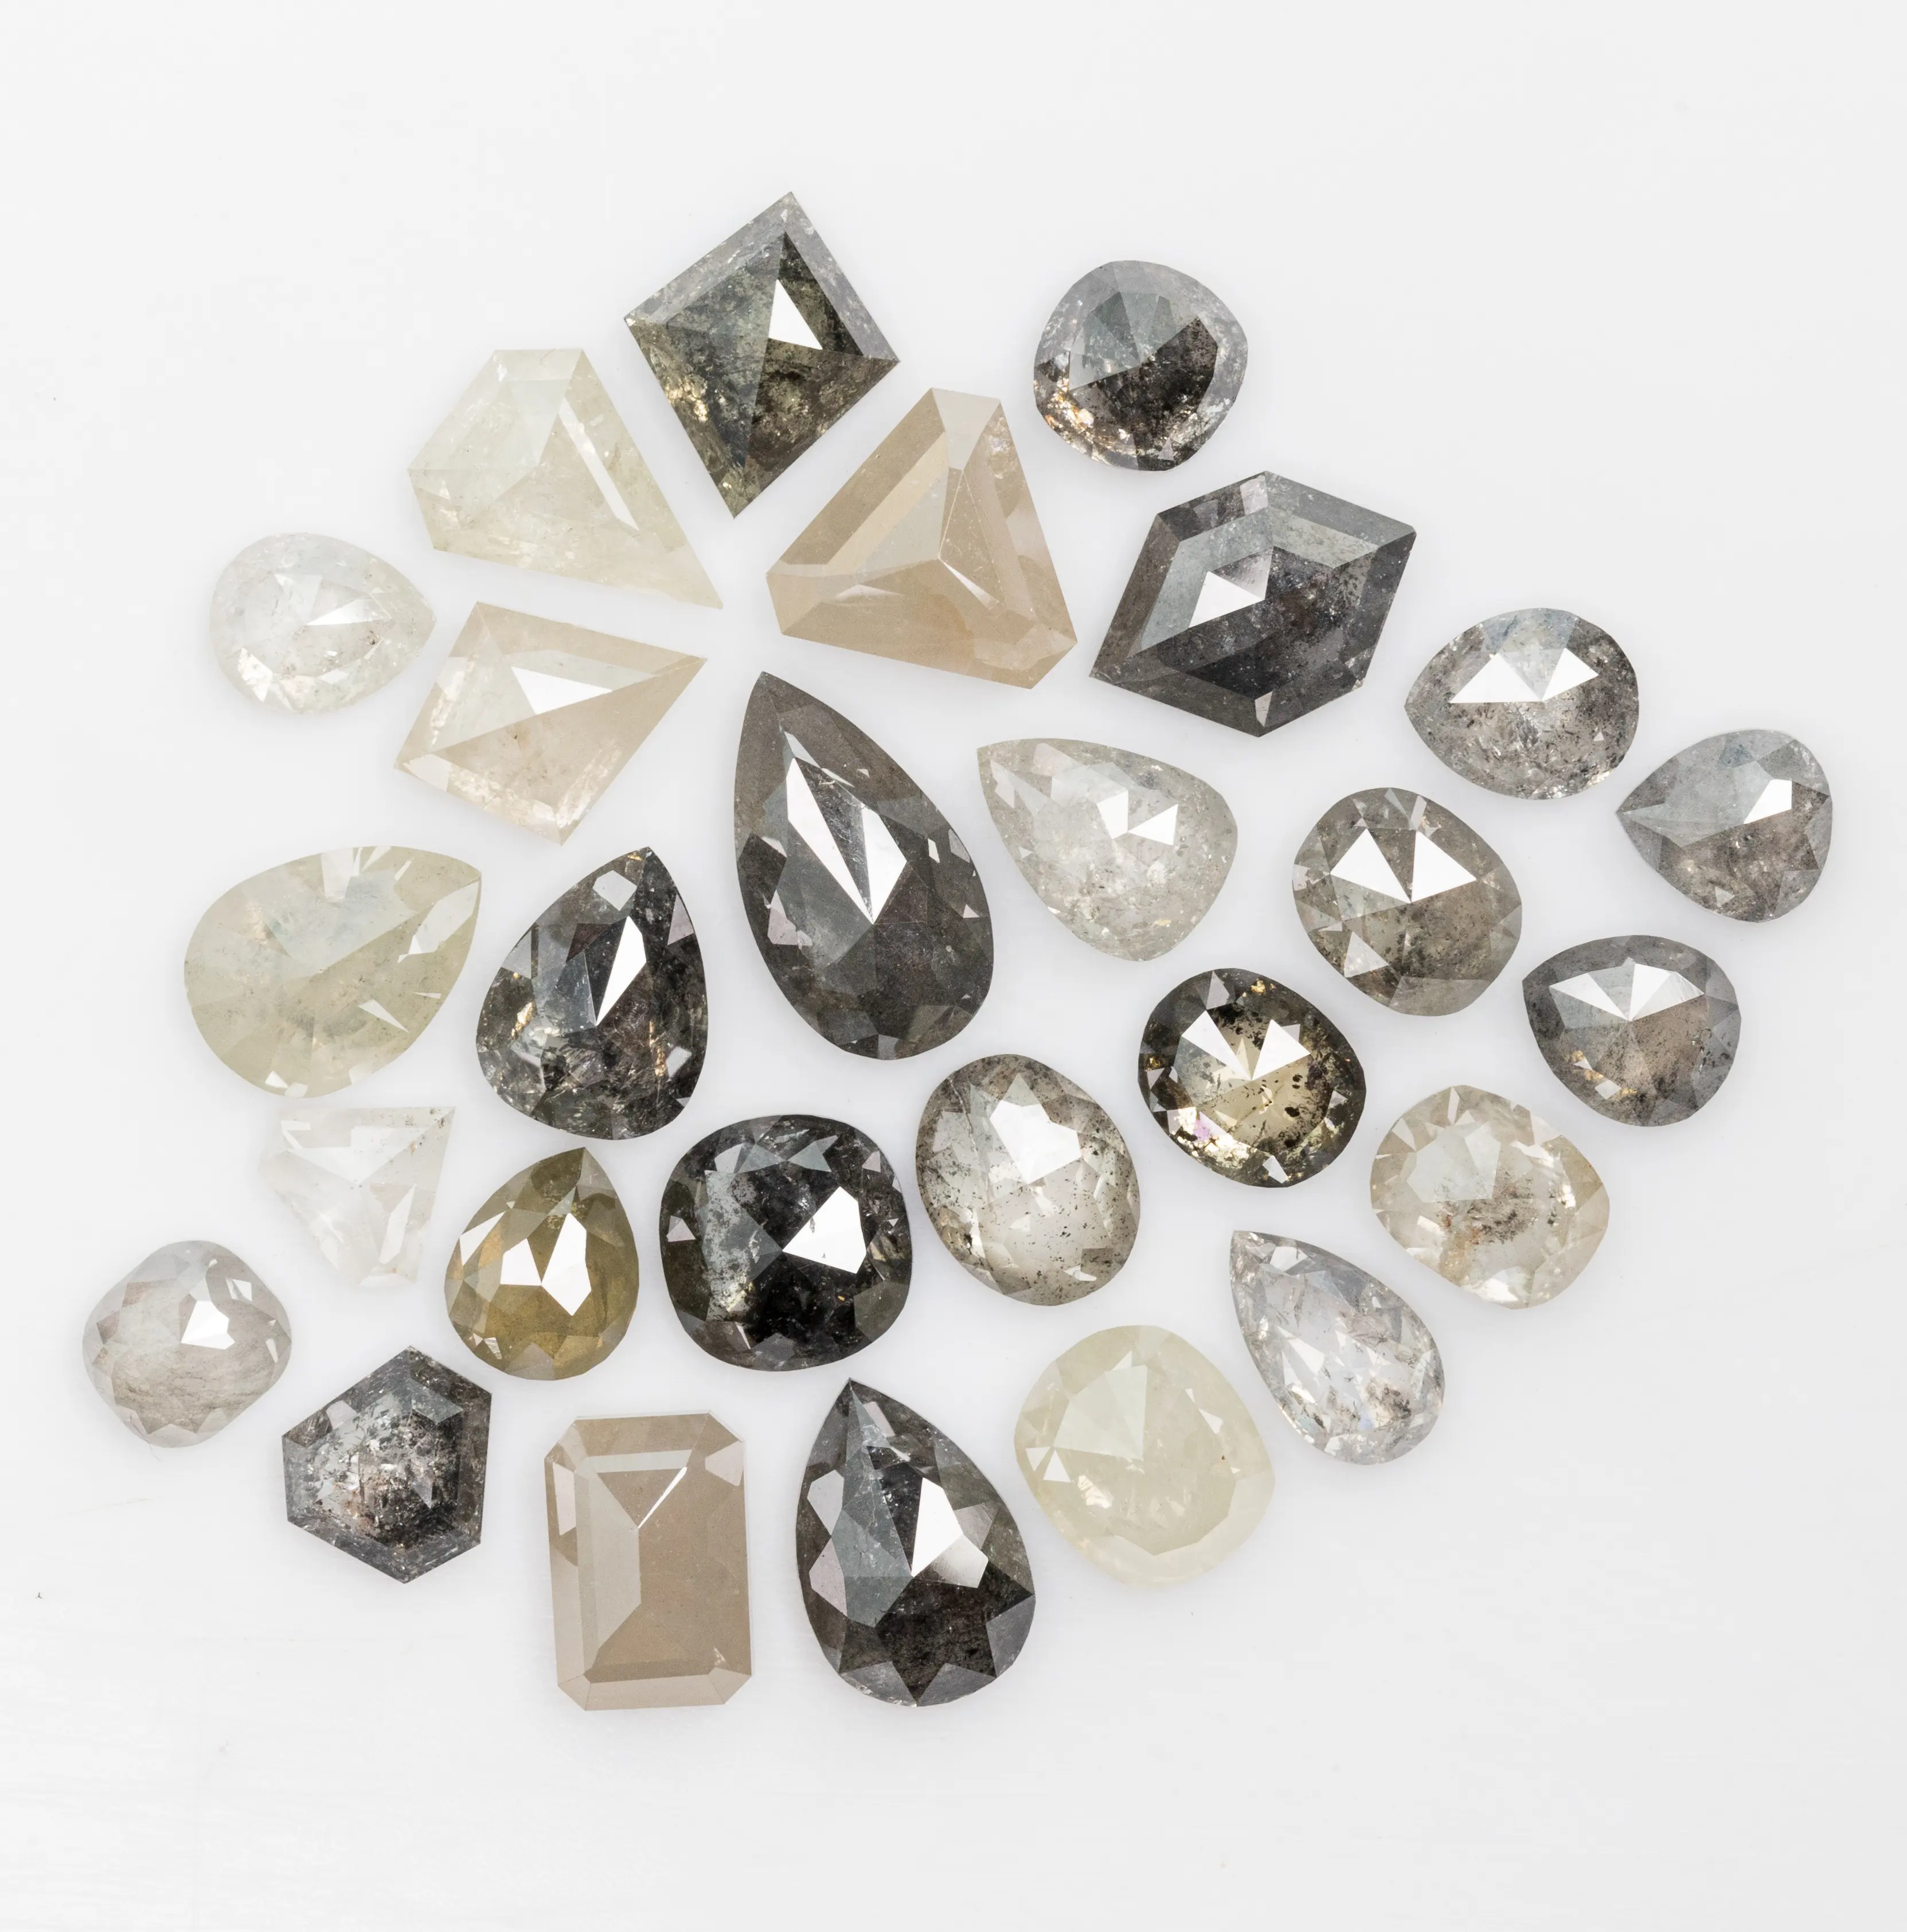 Witte Kleur Rosgeslepen Chakri Diamanten Tegen Groothandelsprijs In India Zout En Peper Diamanten 100% Natuurlijke Diamanten Versus Si I1